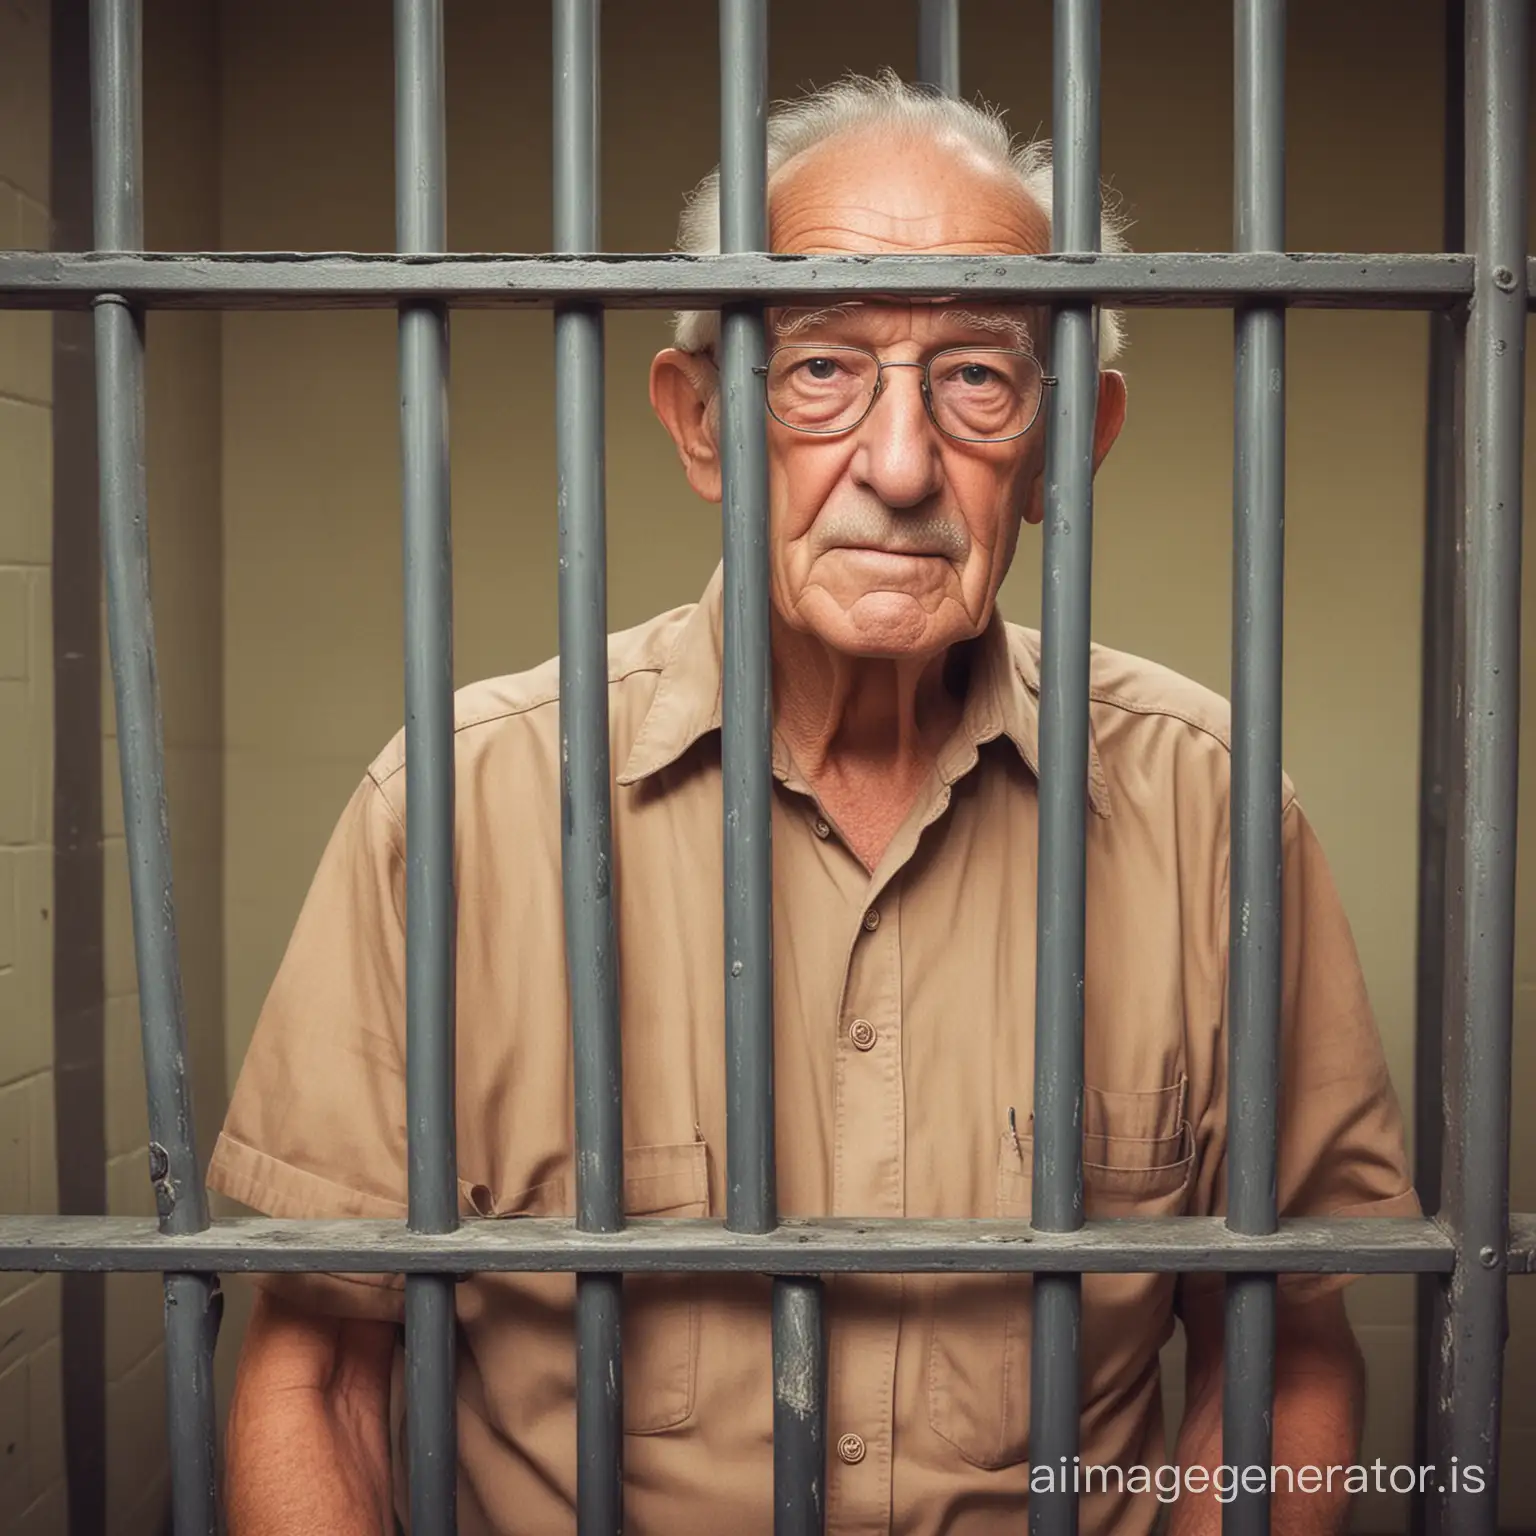 grandpa in a jail